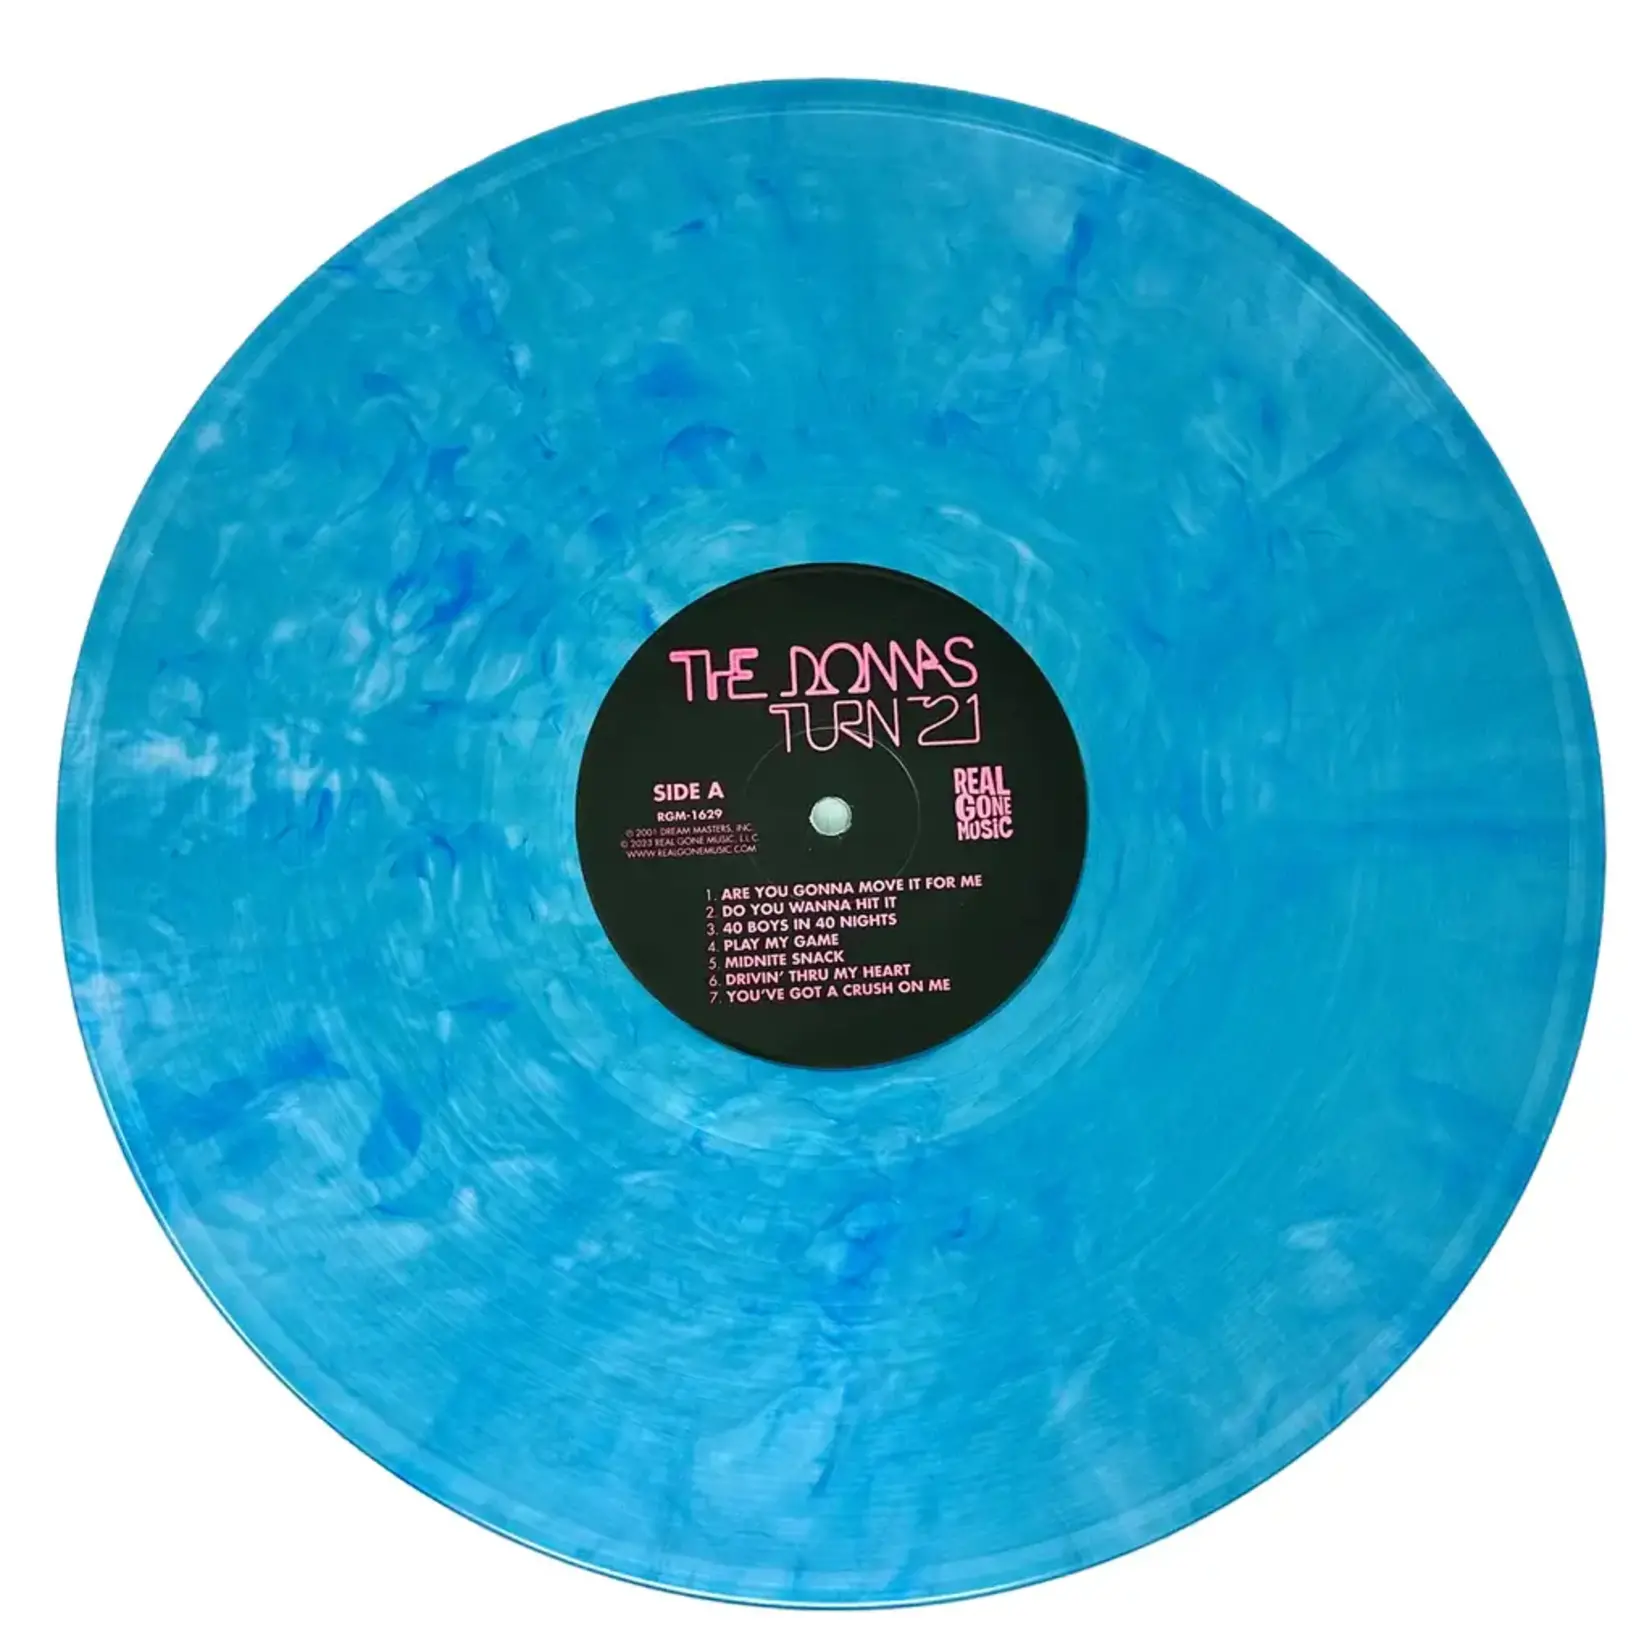 [New] Donnas - Turn 21 (remastered, blue ice queen vinyl)